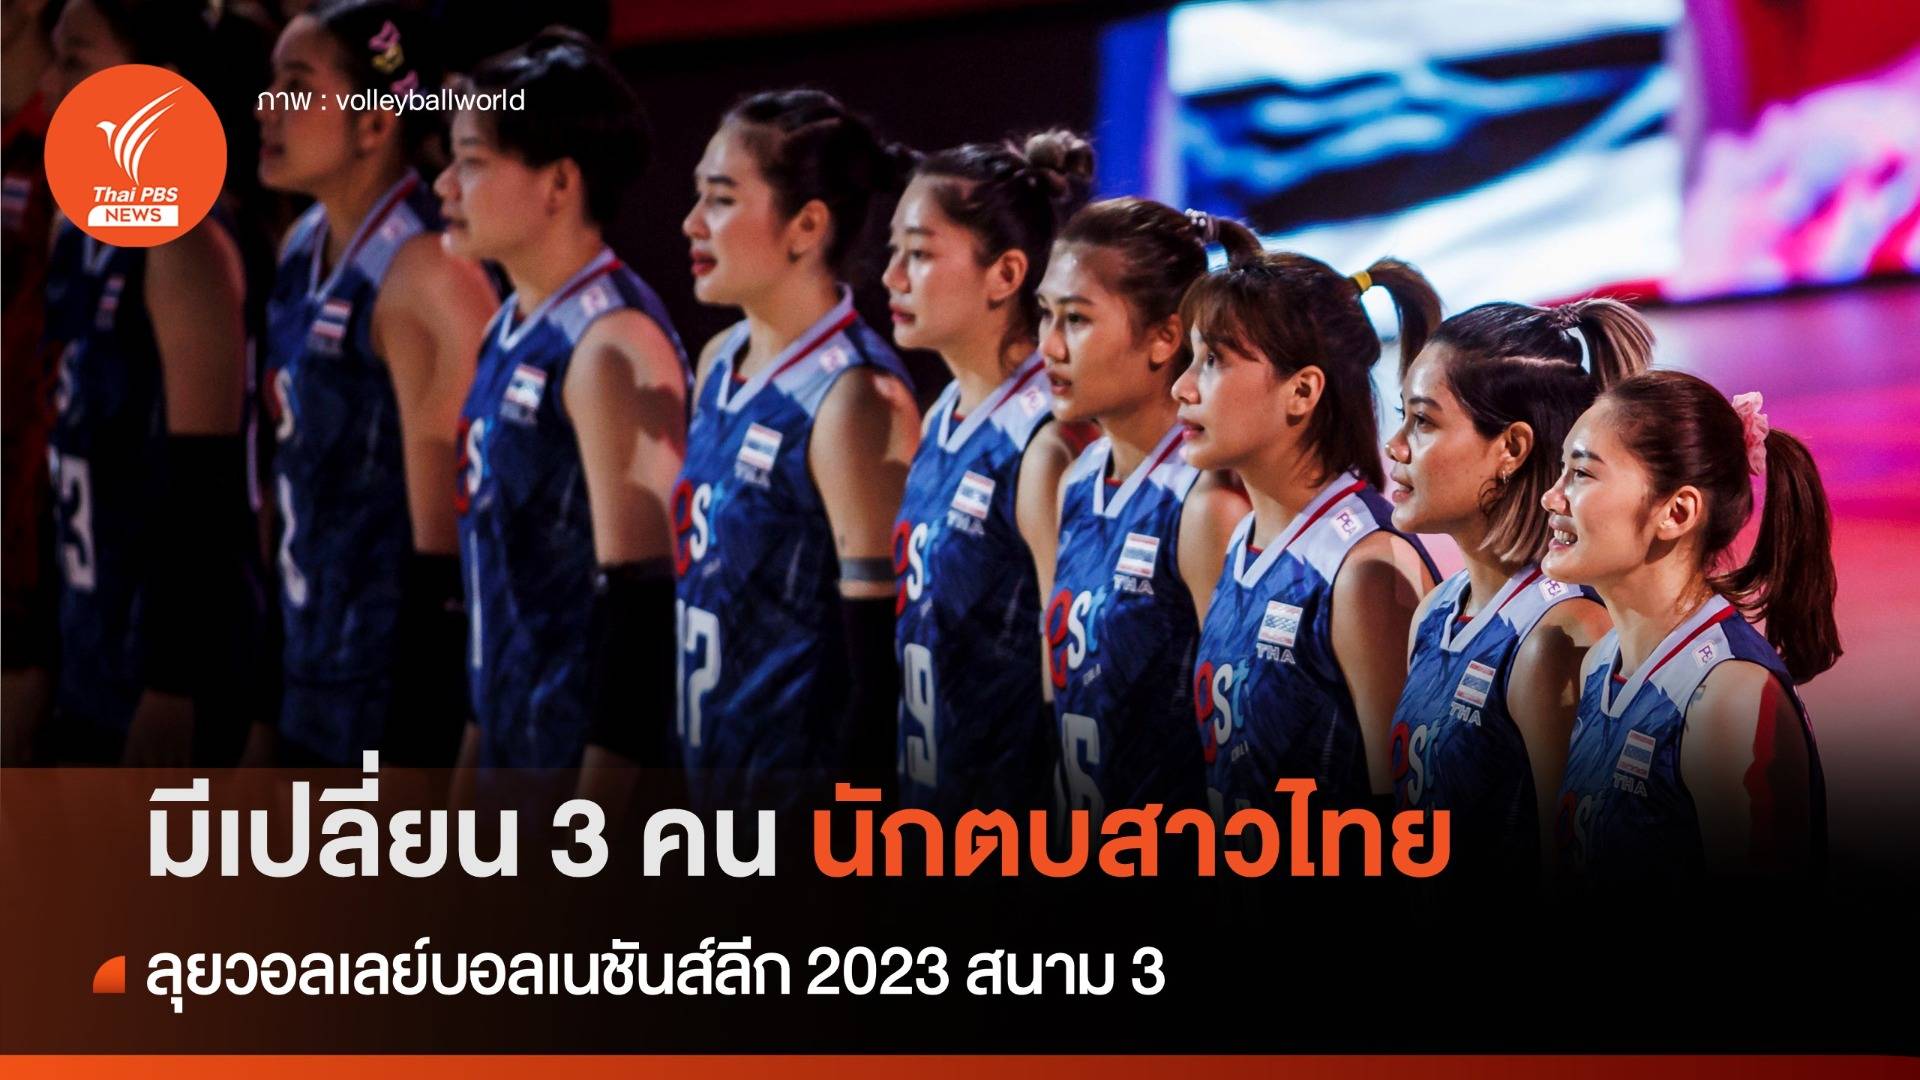 ประกาศรายชื่อ 14 นักตบสาวไทย ลุยศึกเนชันส์ลีก 2023 สนาม 3 มีเปลี่ยน 3 คน